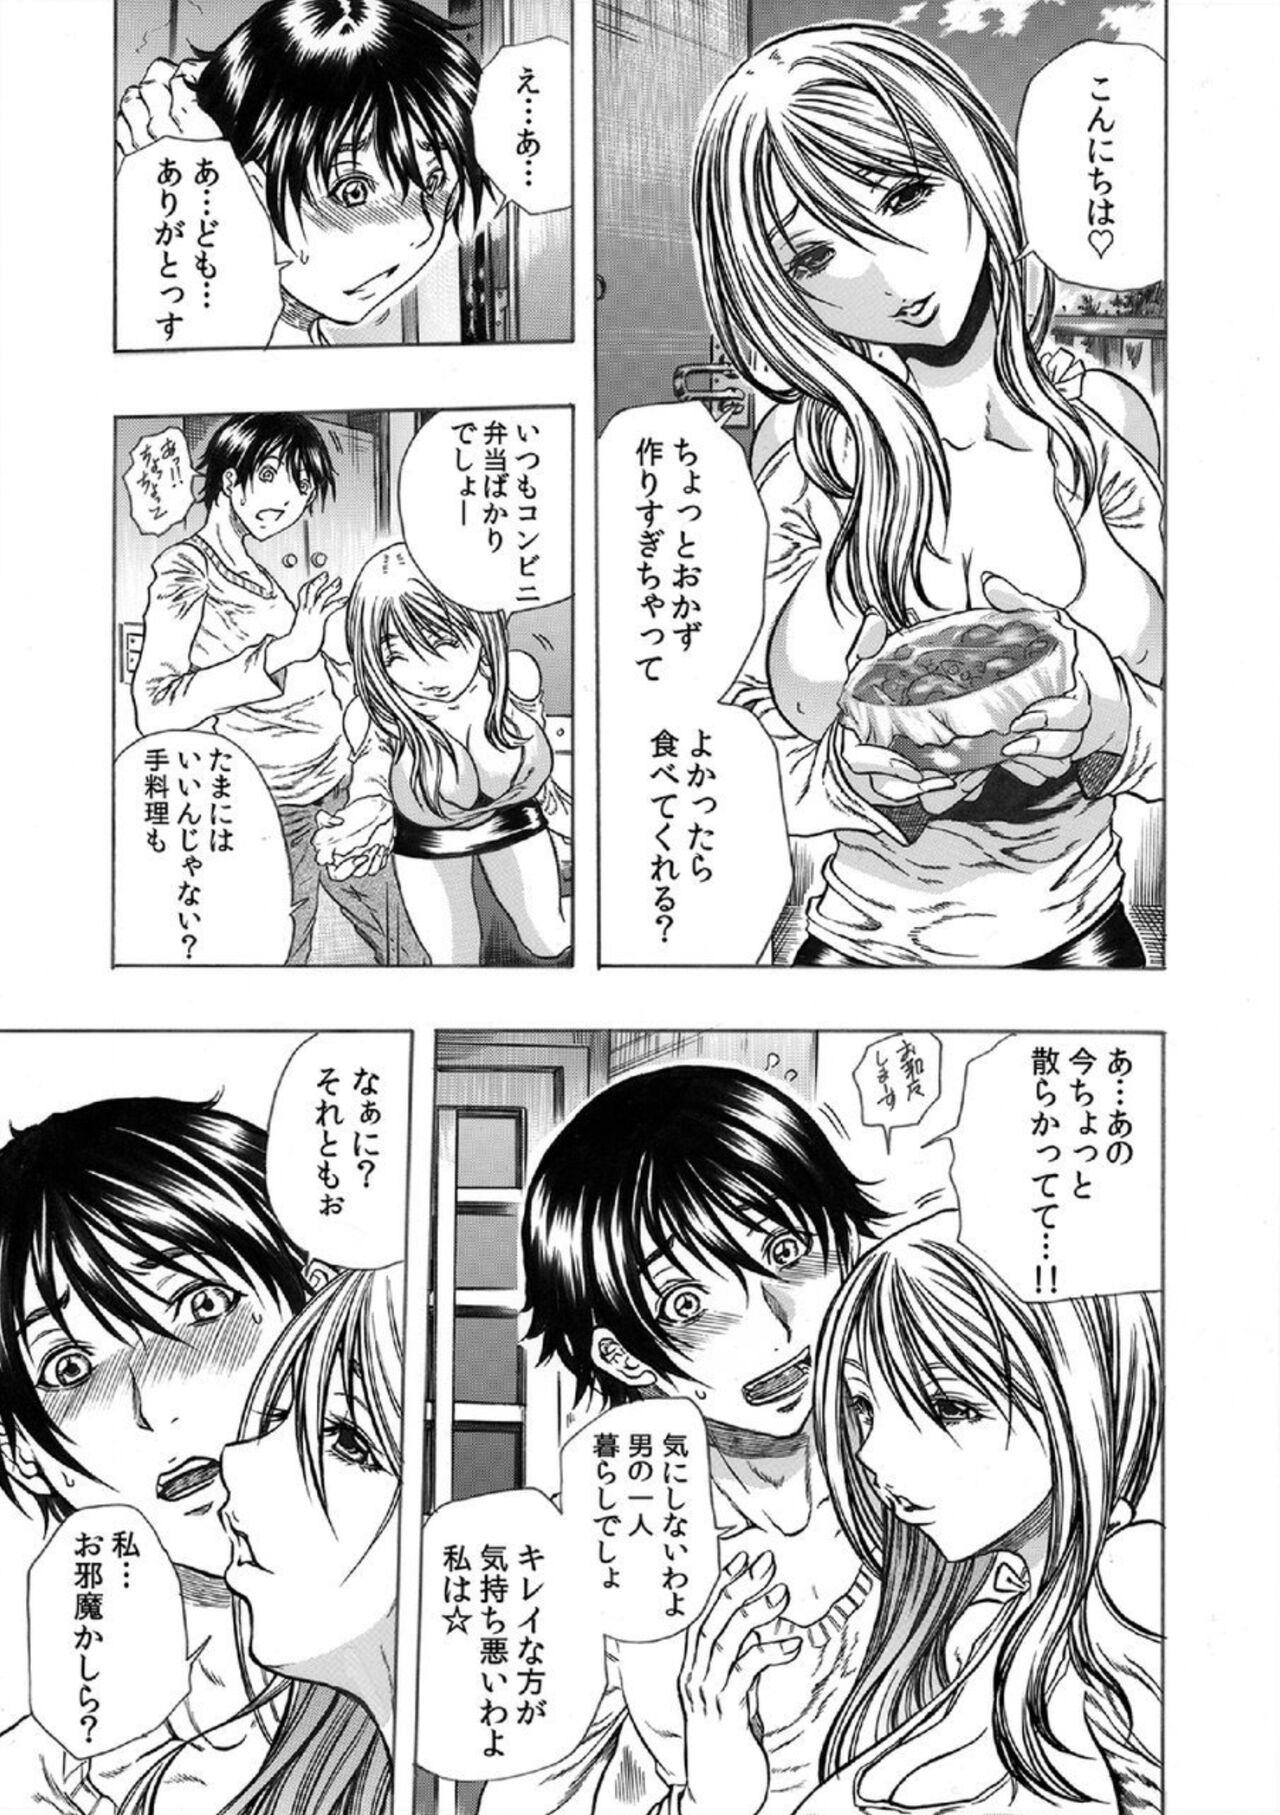 Couples Tonarinookusan O Kachiku Ni Suru 13 No Hōhō 1 Bubblebutt - Page 4